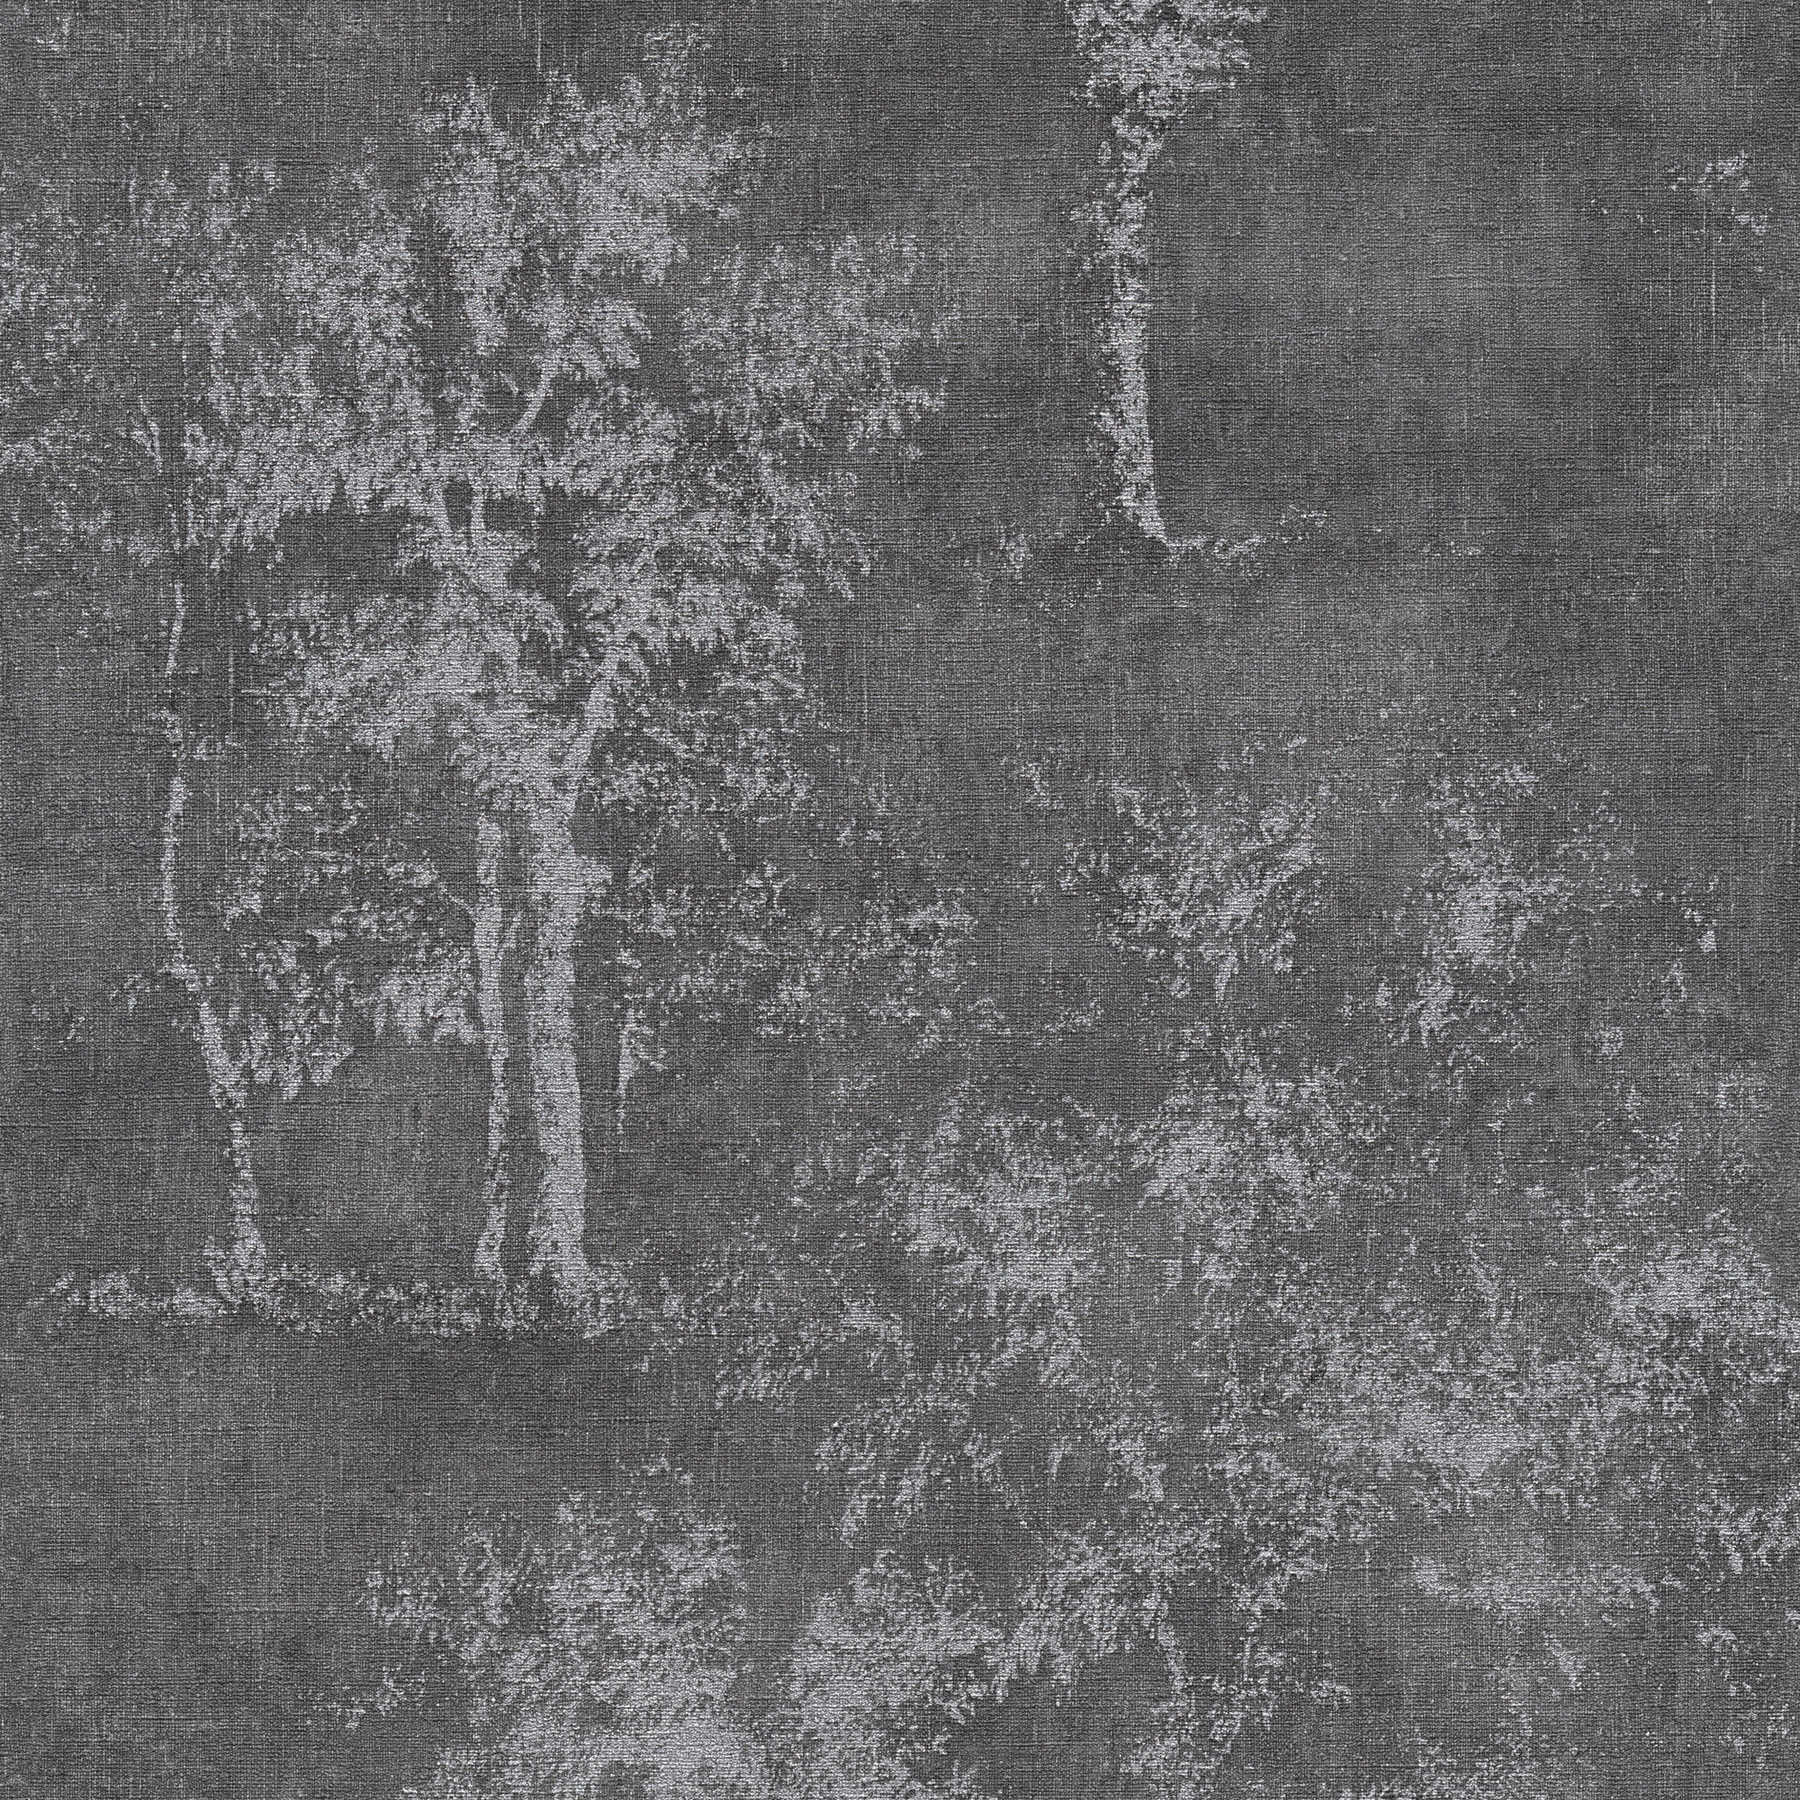             Papel pintado no tejido rústico con efecto de textura y motivo de árbol - gris
        